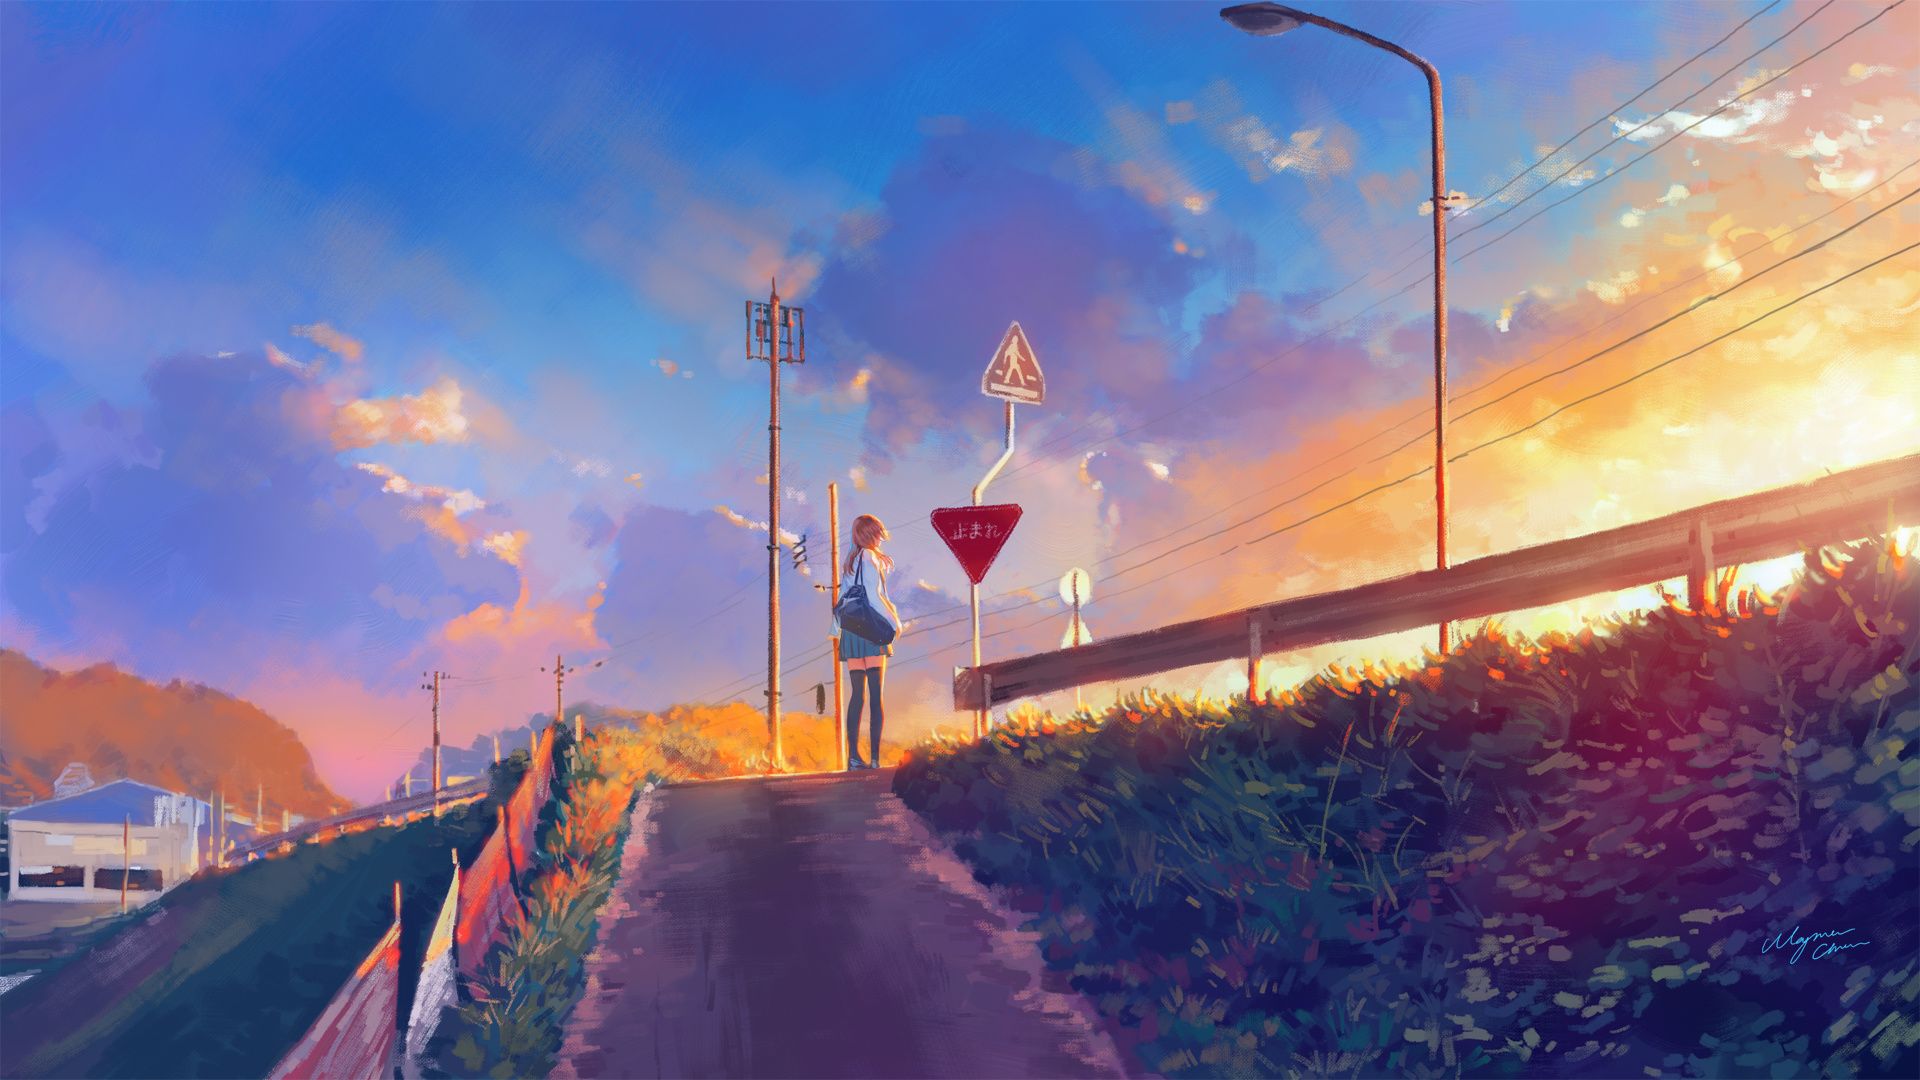 Sunset Background Anime Wallpaper - Sunset Wallpapers Album On Imgur